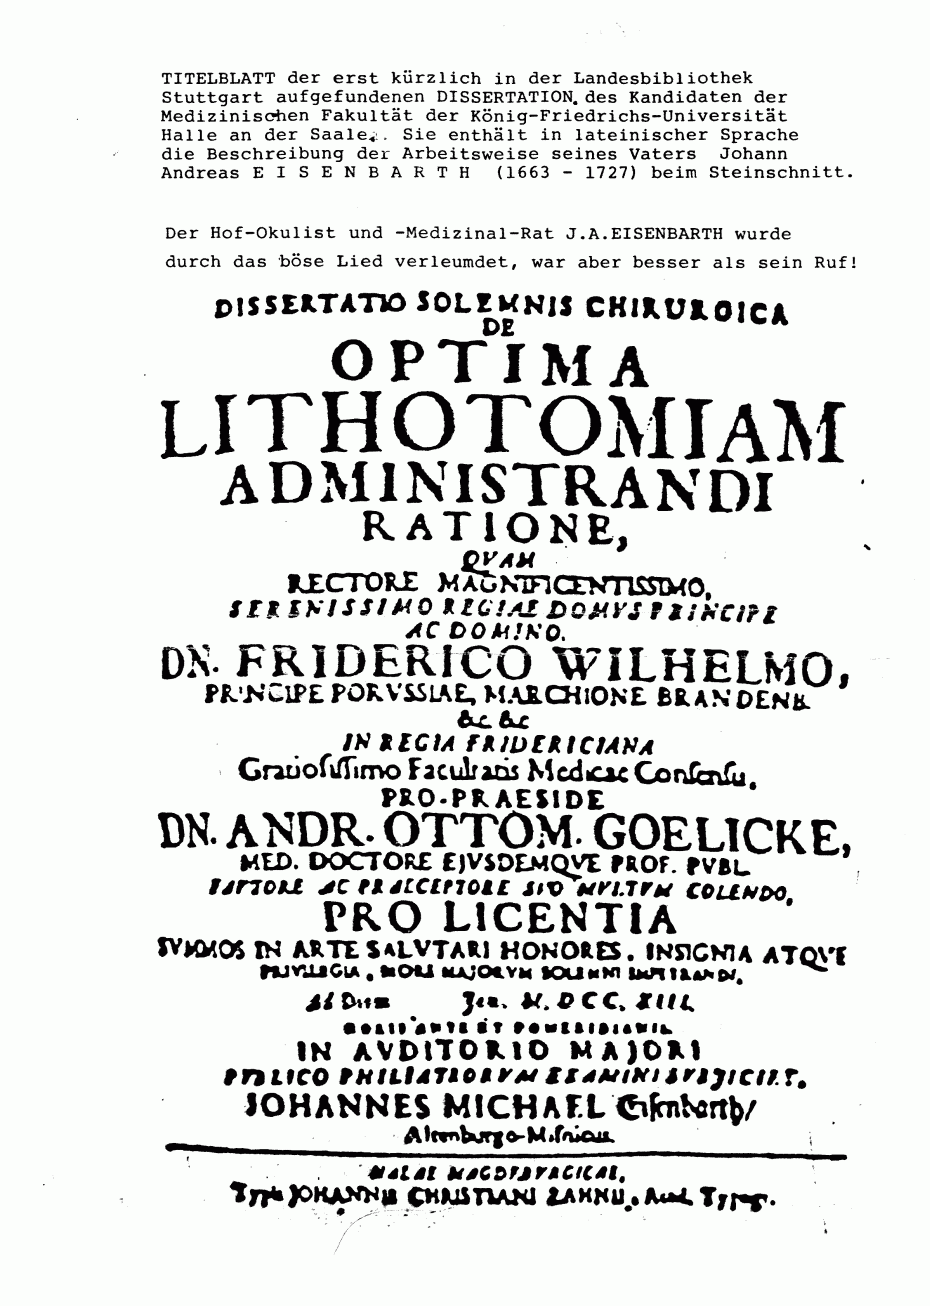 Kopie der Dissertation von 1713